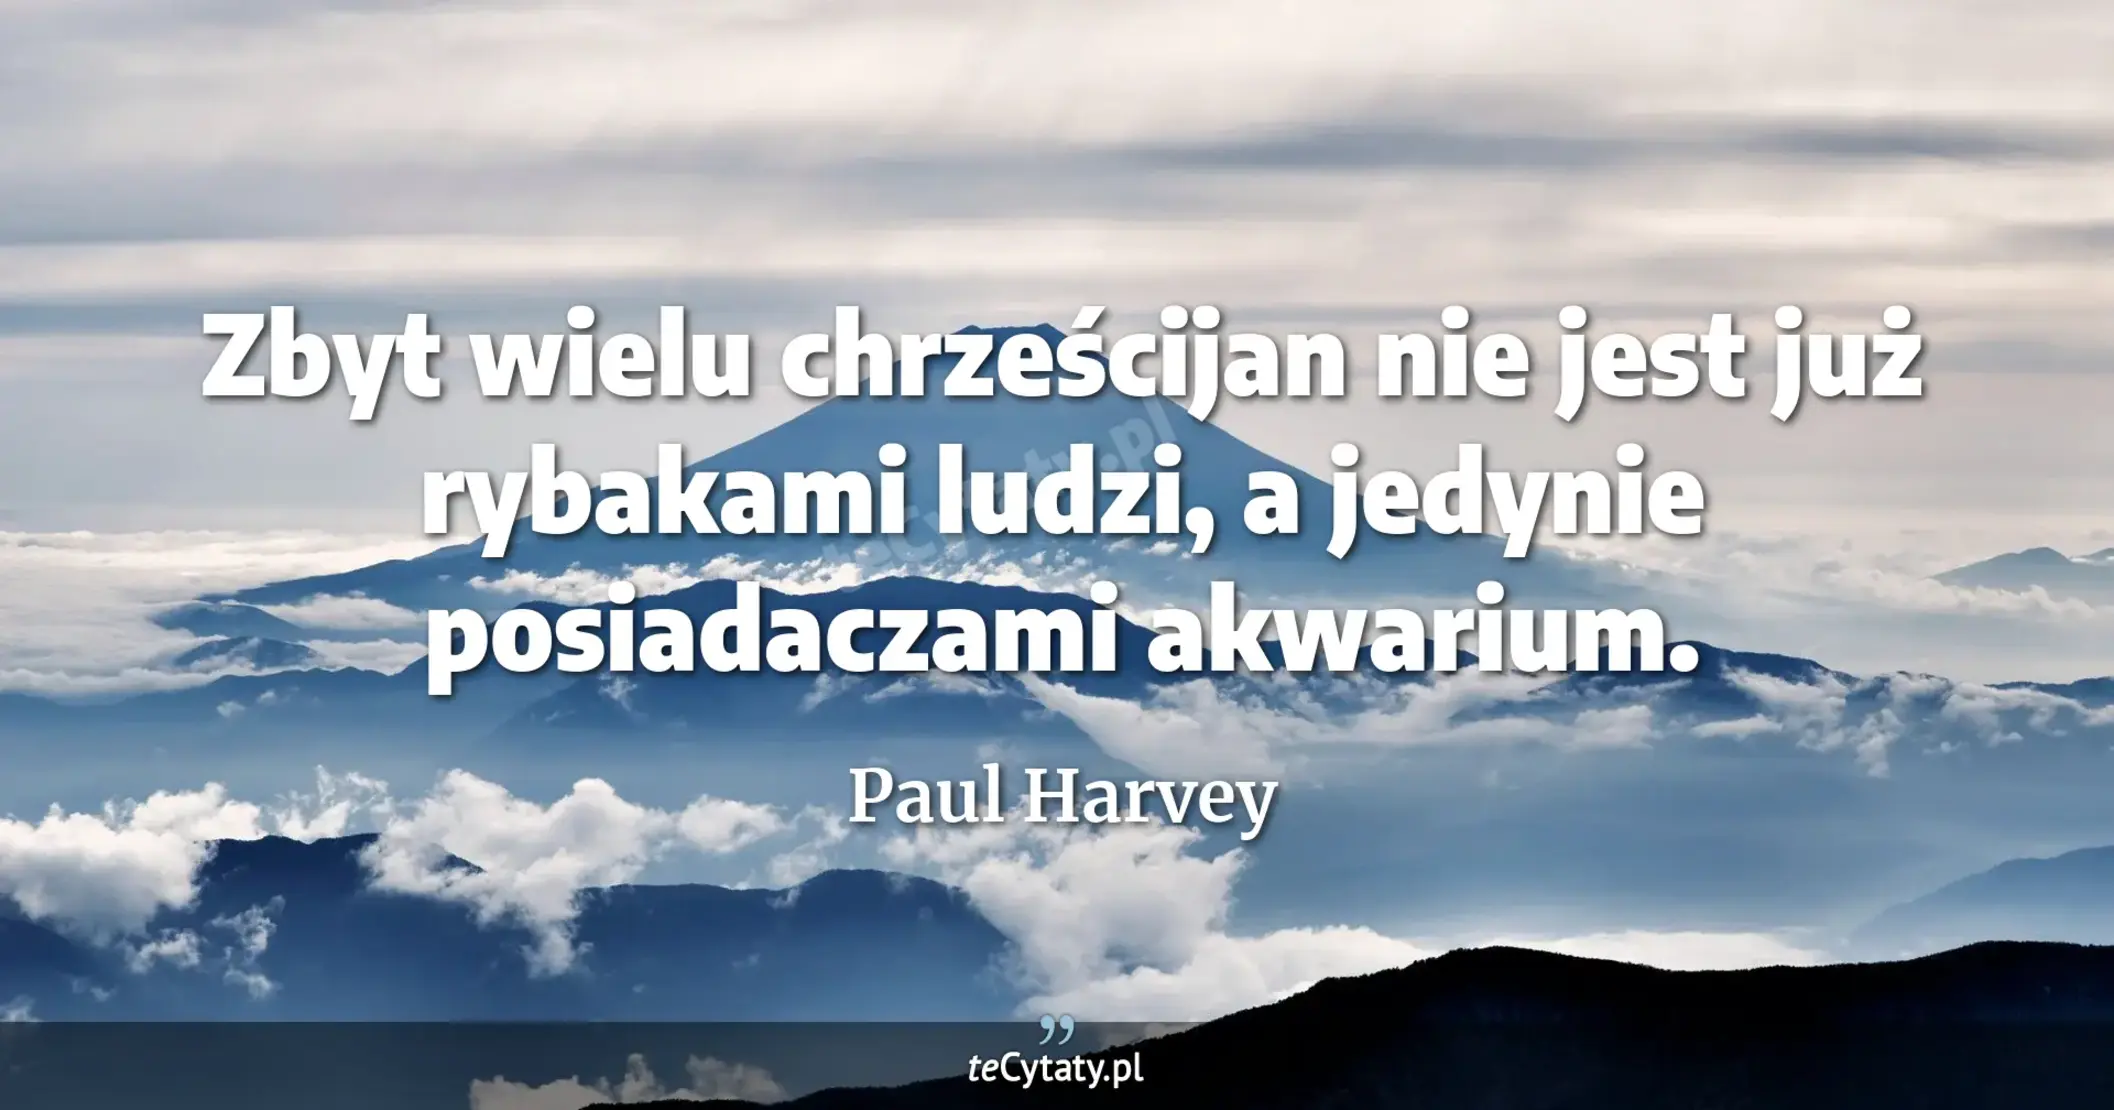 Zbyt wielu chrześcijan nie jest już rybakami ludzi, a jedynie posiadaczami akwarium. - Paul Harvey